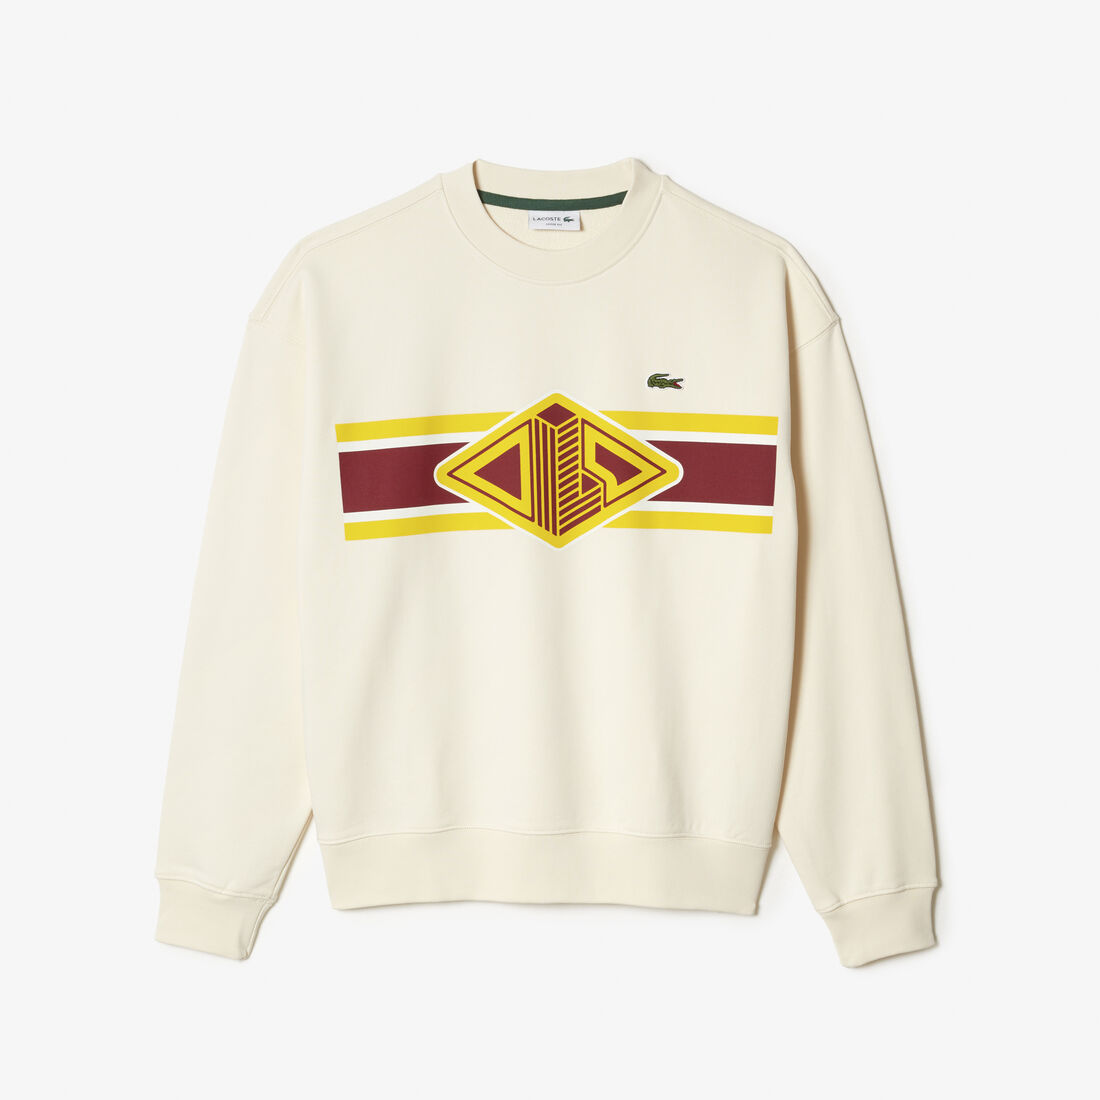 Lacoste Round Neck Loose Fit Printed Sweatshirts Herren Weiß | ESPU-94638